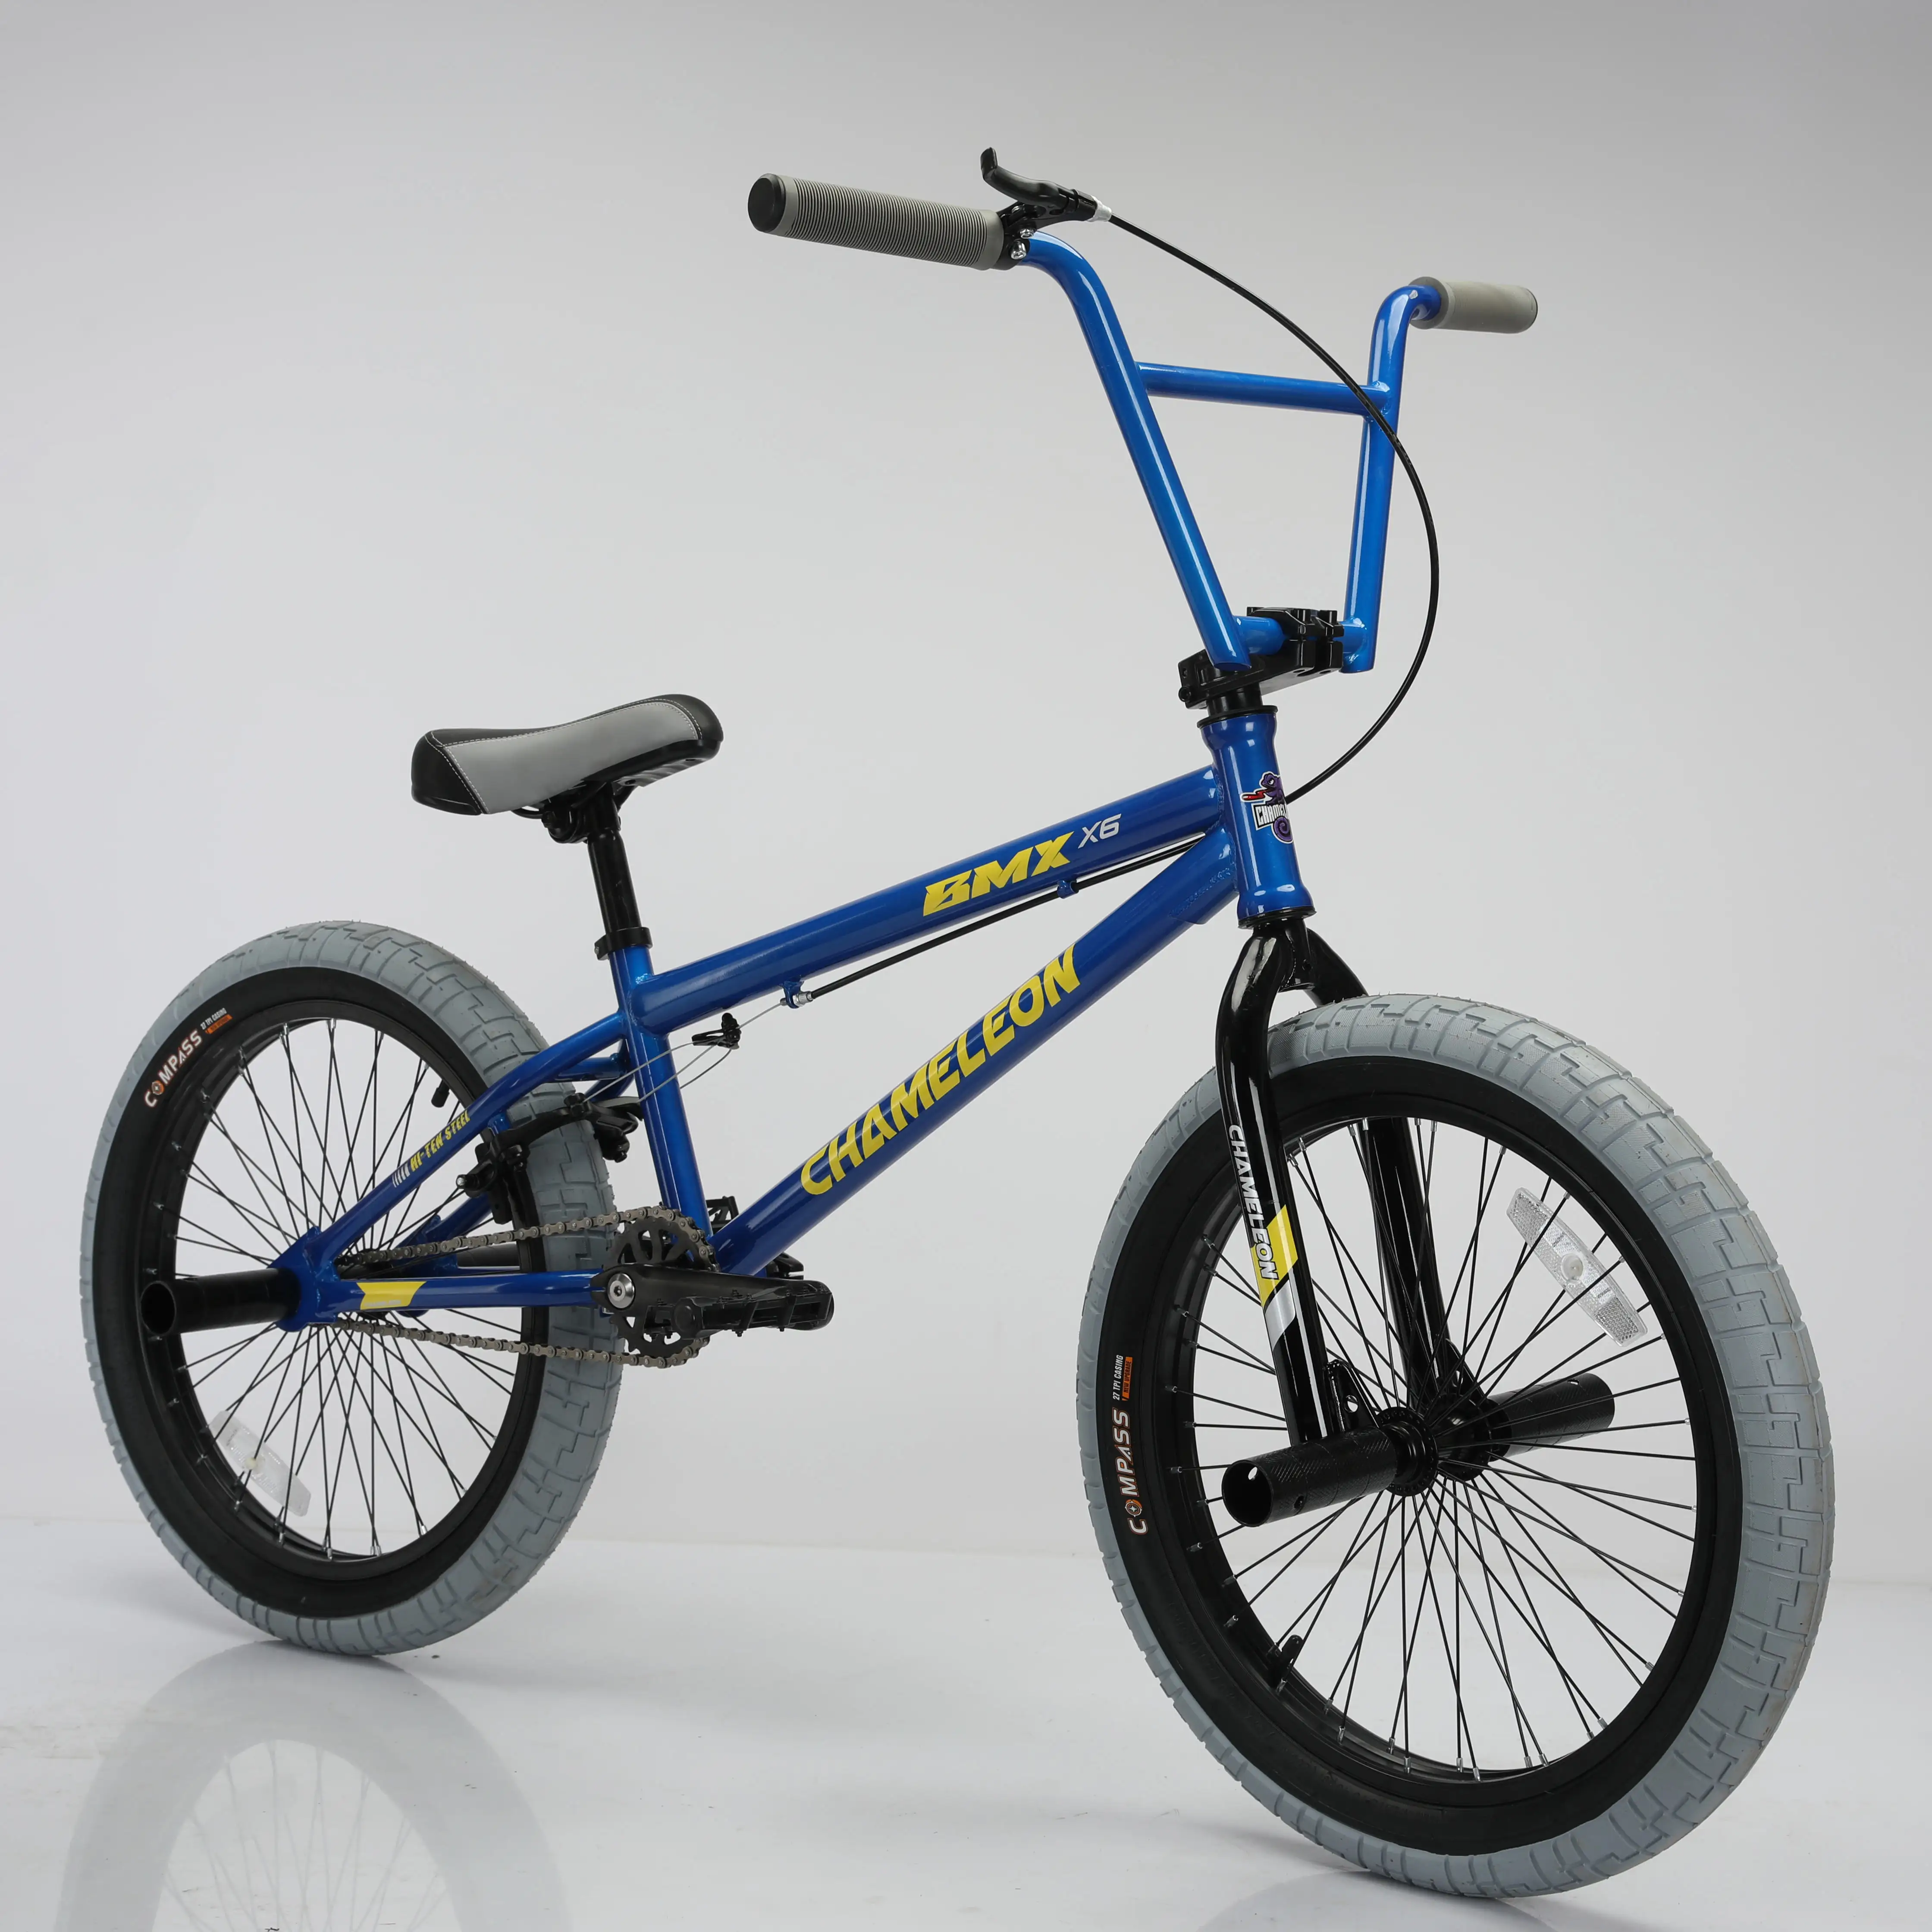 Großhandel 20 Zoll billigste Mini BMX Freestyle Fahrrad/Original Bicicletas BMX Fahrrad/alle Arten von Preis BMX Fahrrad für Männer